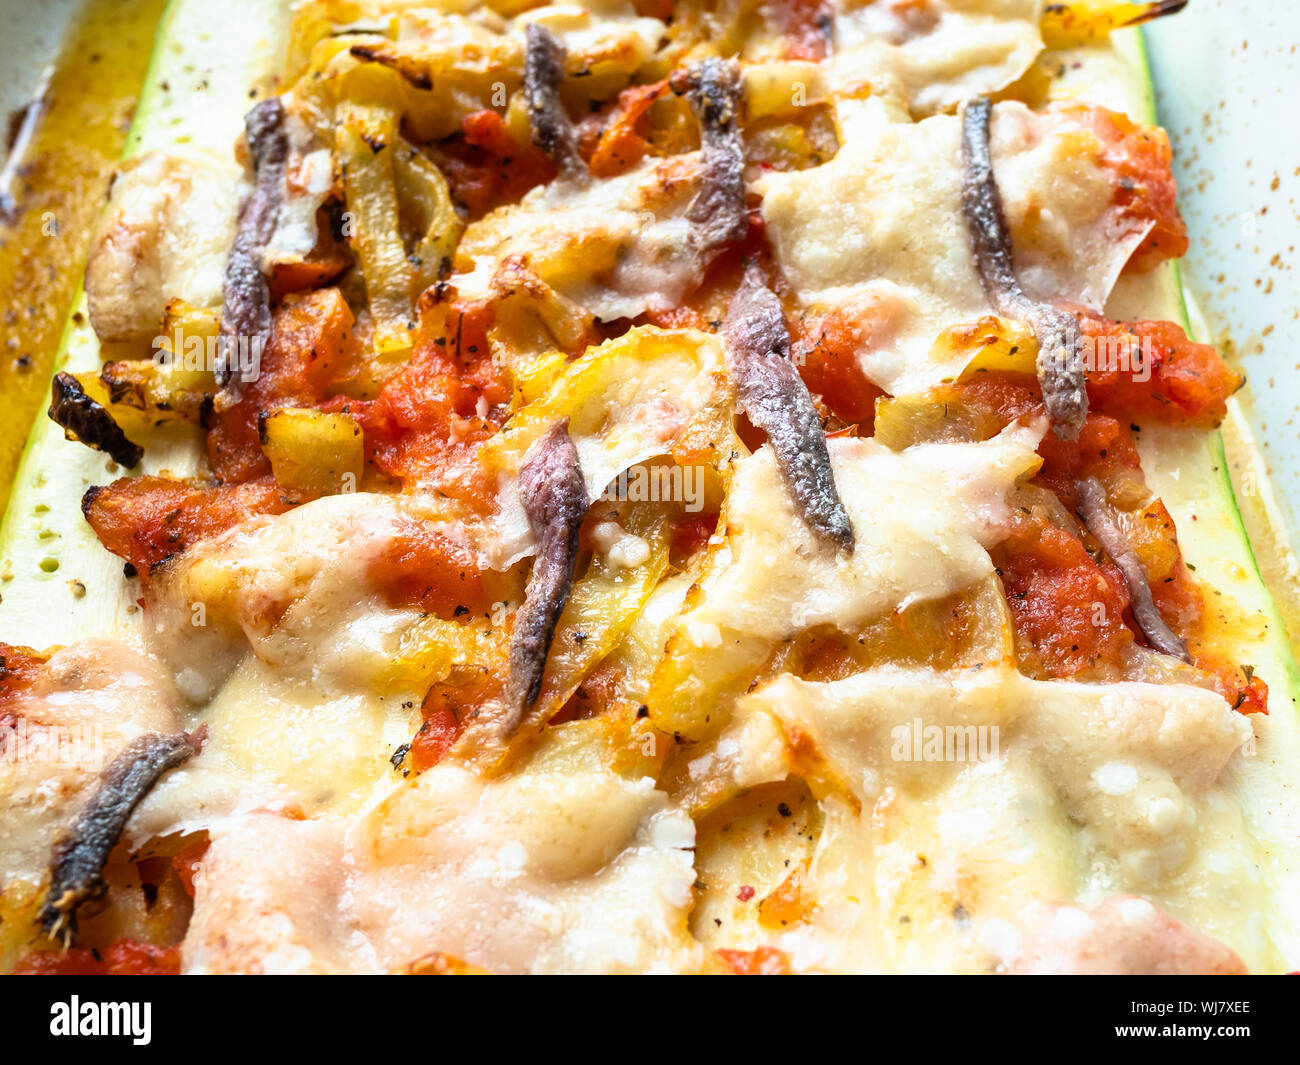 Cuisine française - courgette cuite au four avec des tranches de tomate et piment doux avec topping from cheece Parmesan, l'ail et les anchois avec la vinaigrette de ol Banque D'Images